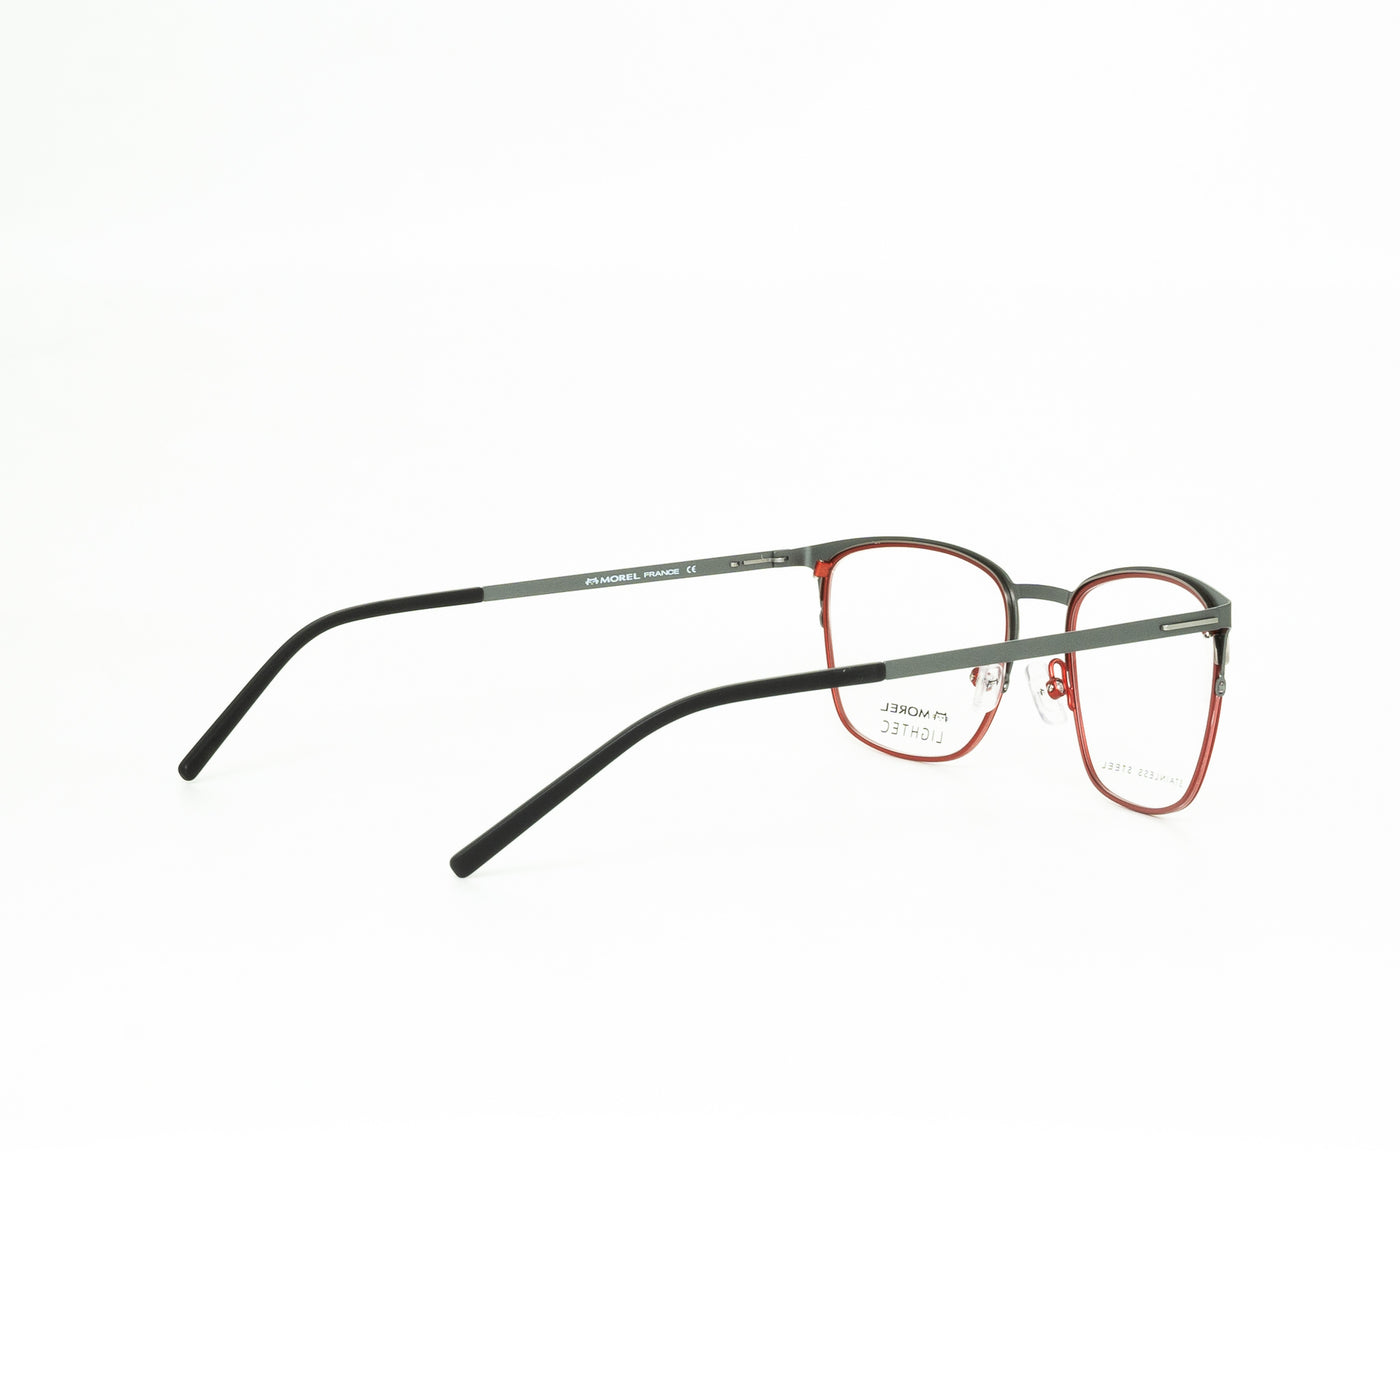 Oga OGA30232LGR0853 | Eyeglasses - Vision Express Optical Philippines